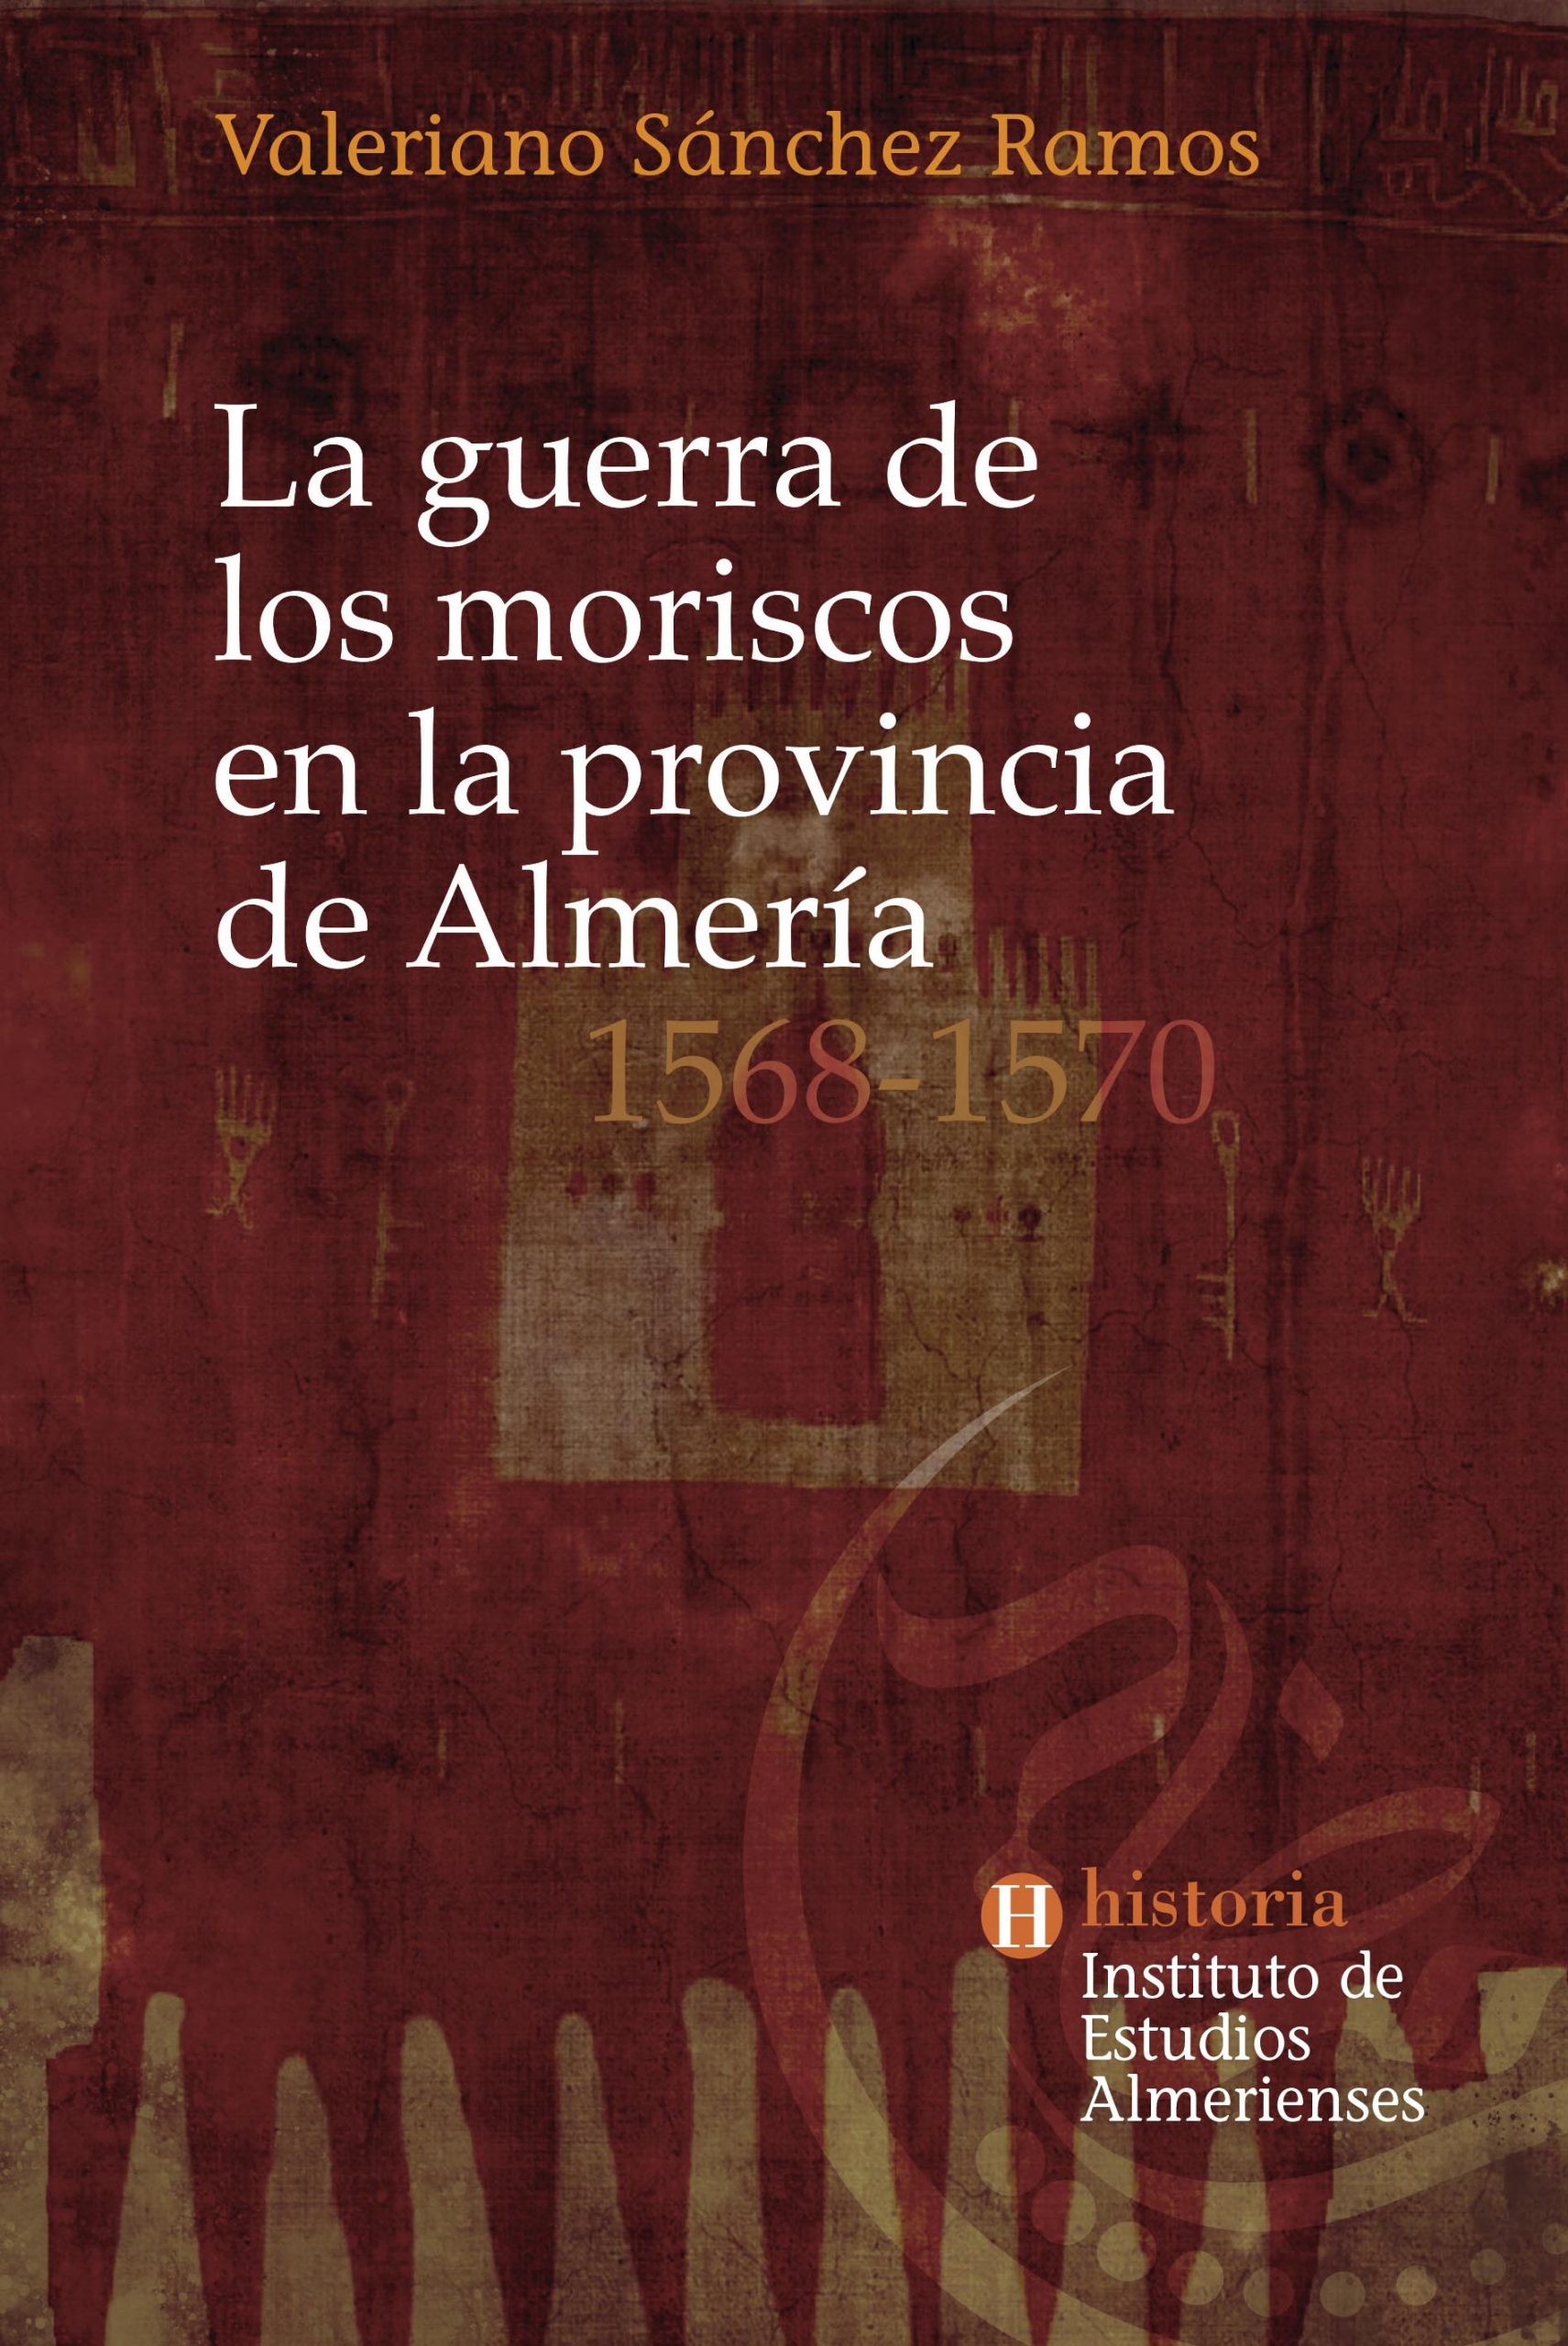 La guerra de los moriscos en la provincia de Almería - 1568 - 1570